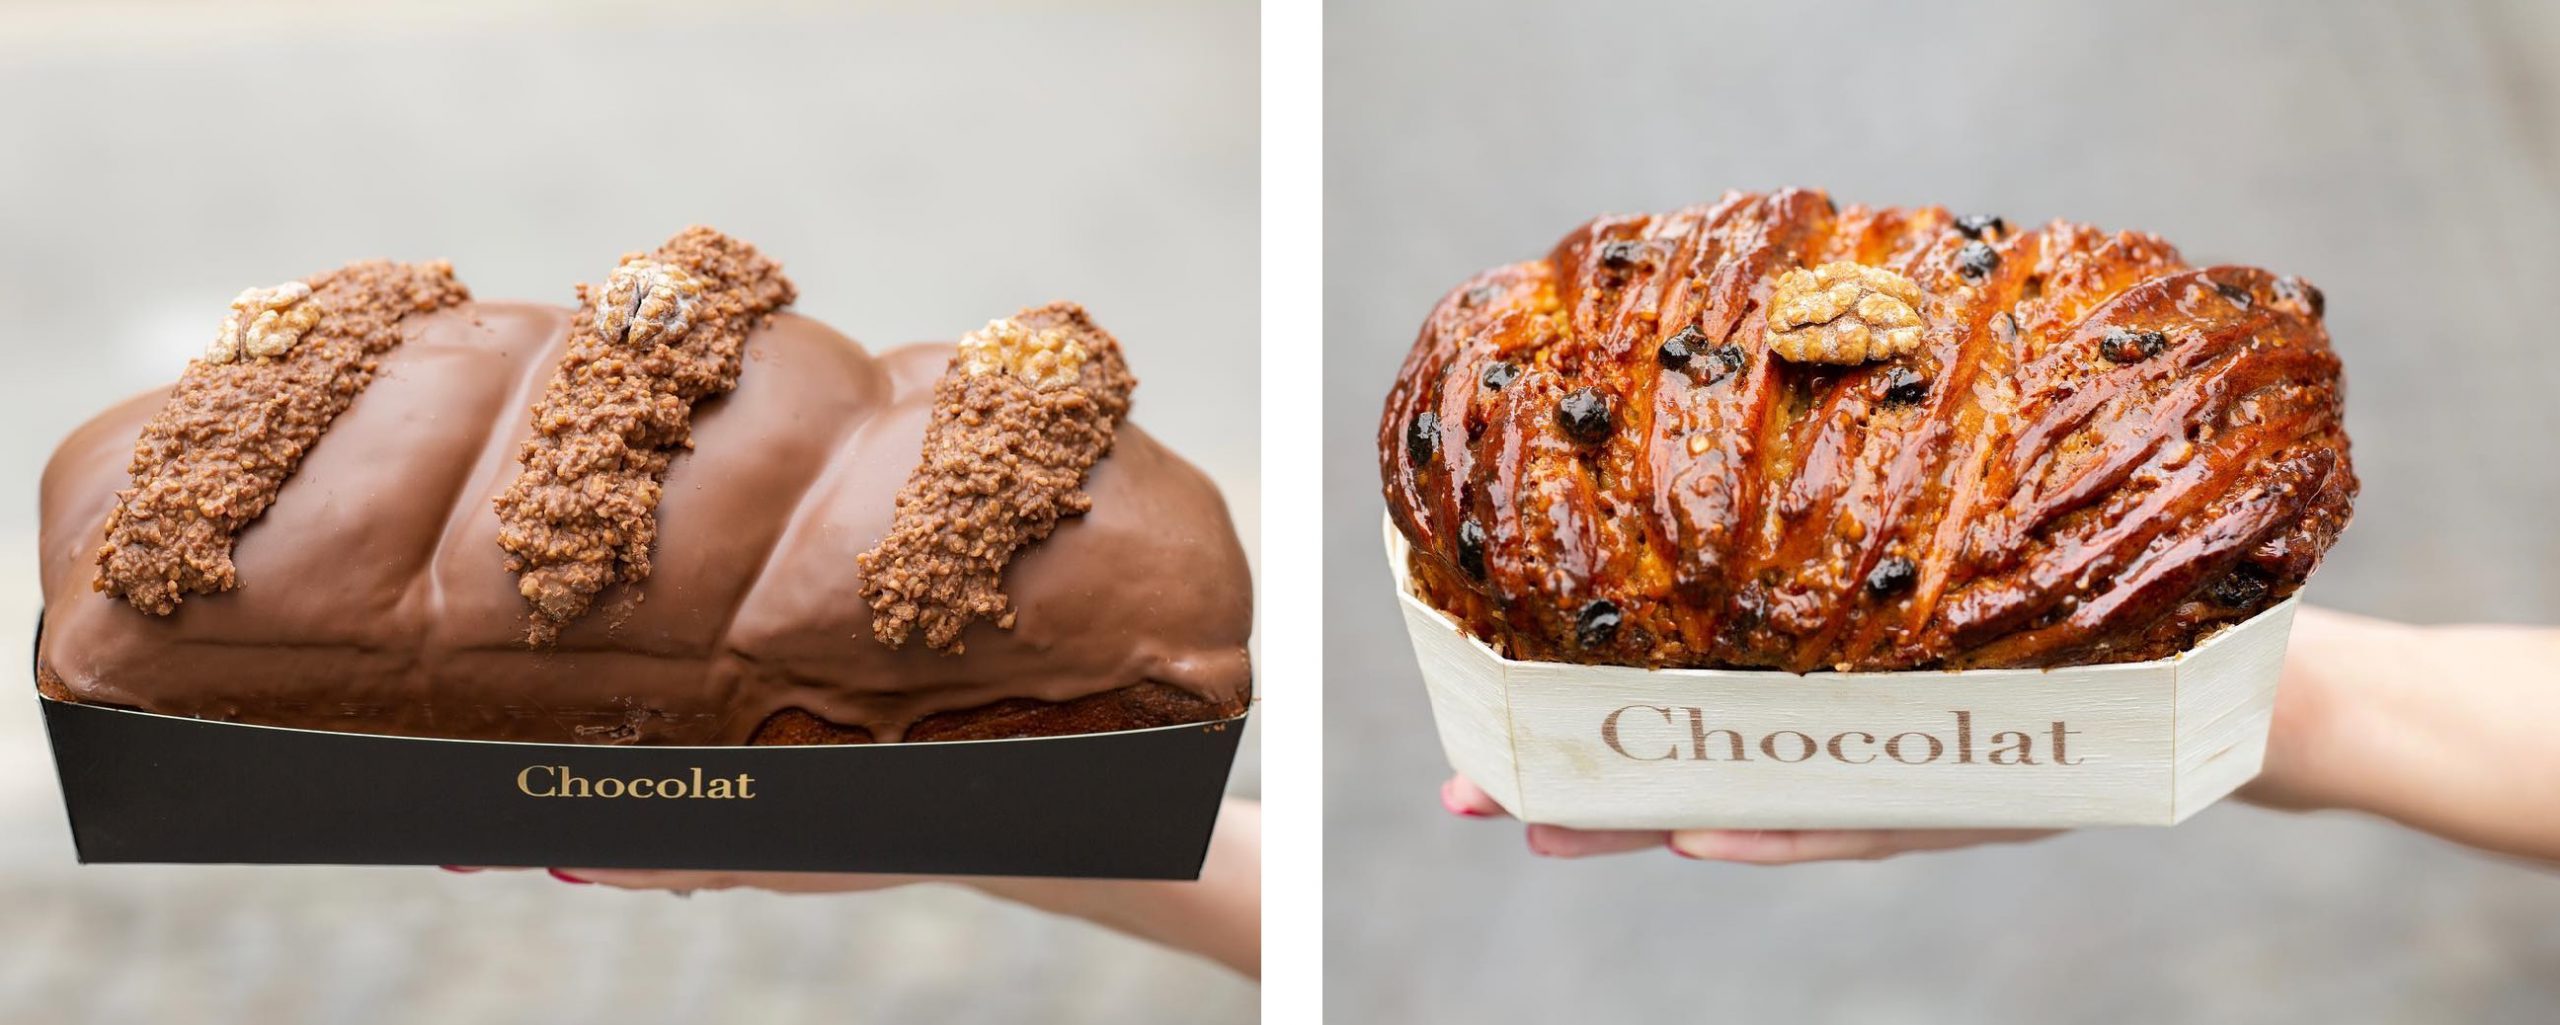 doua tipuri de cozonac de la Chocolat, unul tradițional și altul glazurat cu ciocolata belgiana